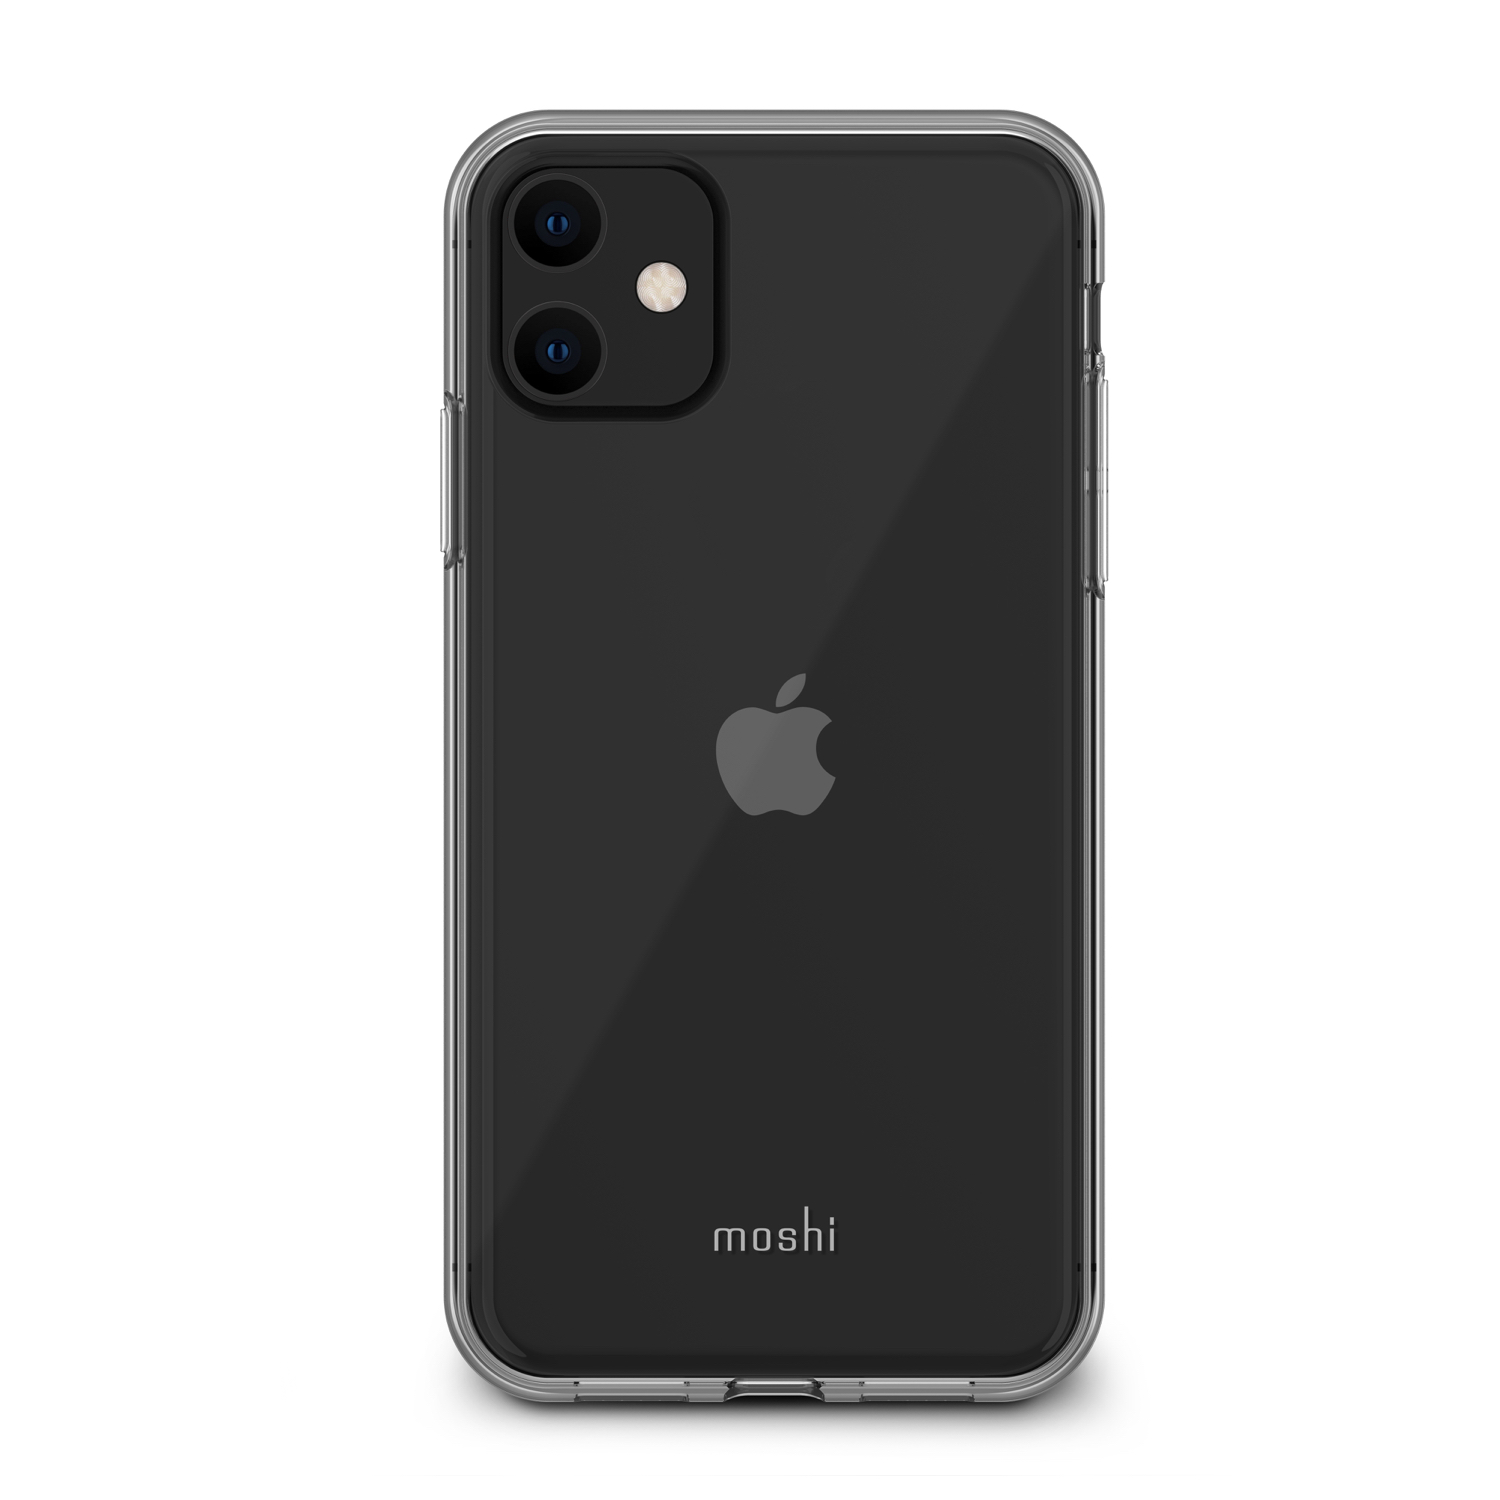 Айфон 11 про черный. Iphone 11 Pro Max Black. Iphone 11 Pro Black. Apple iphone 11 Pro Max черный. Moshi IGLAZE iphone 11.